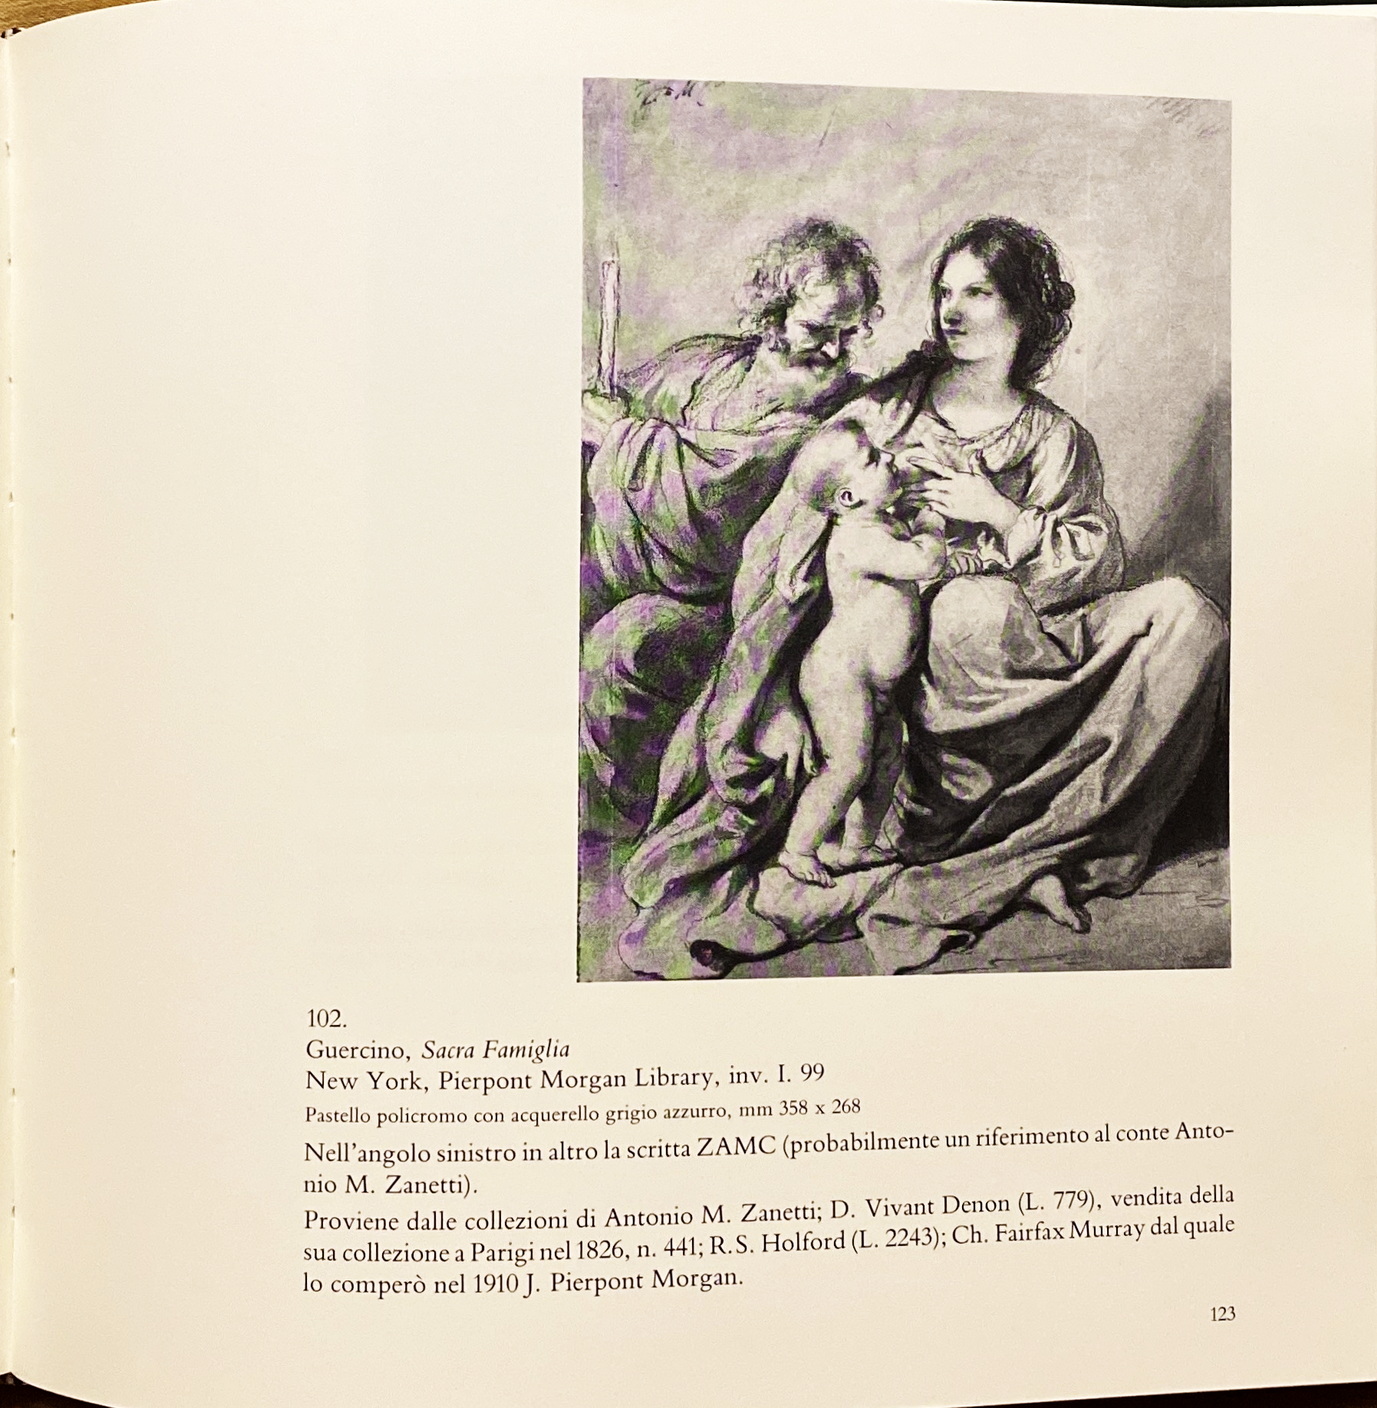 Prisco Bagni, Il Guercino e il suo falsario. I disegni di figura, Ed. Nuova Alfa, 1990